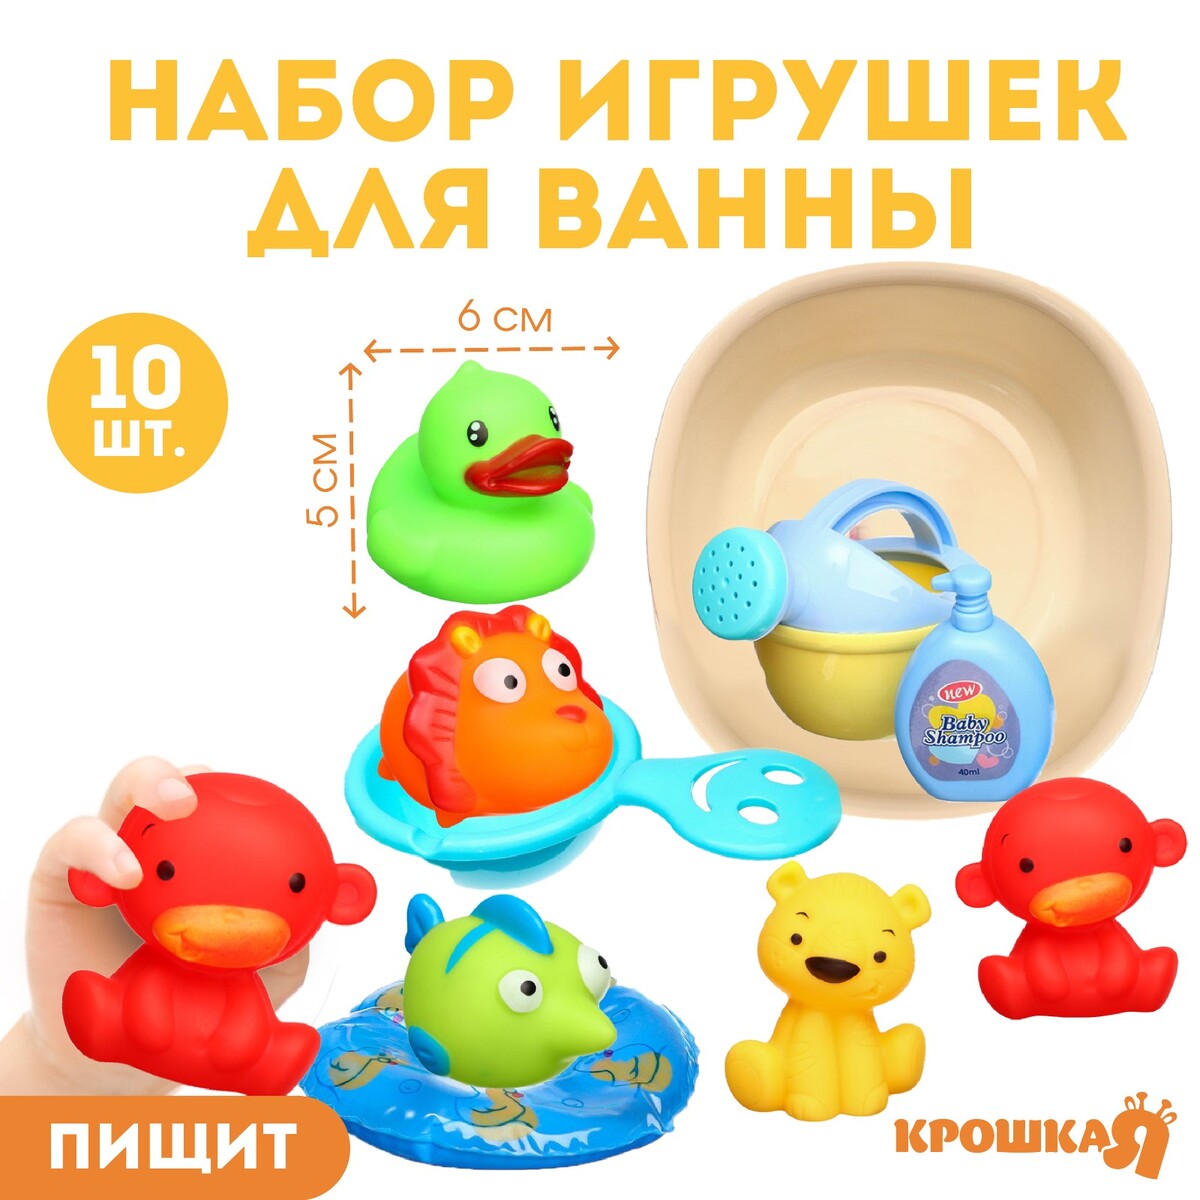 Набор резиновых игрушек для ванны набор резиновых втулок 125 шт